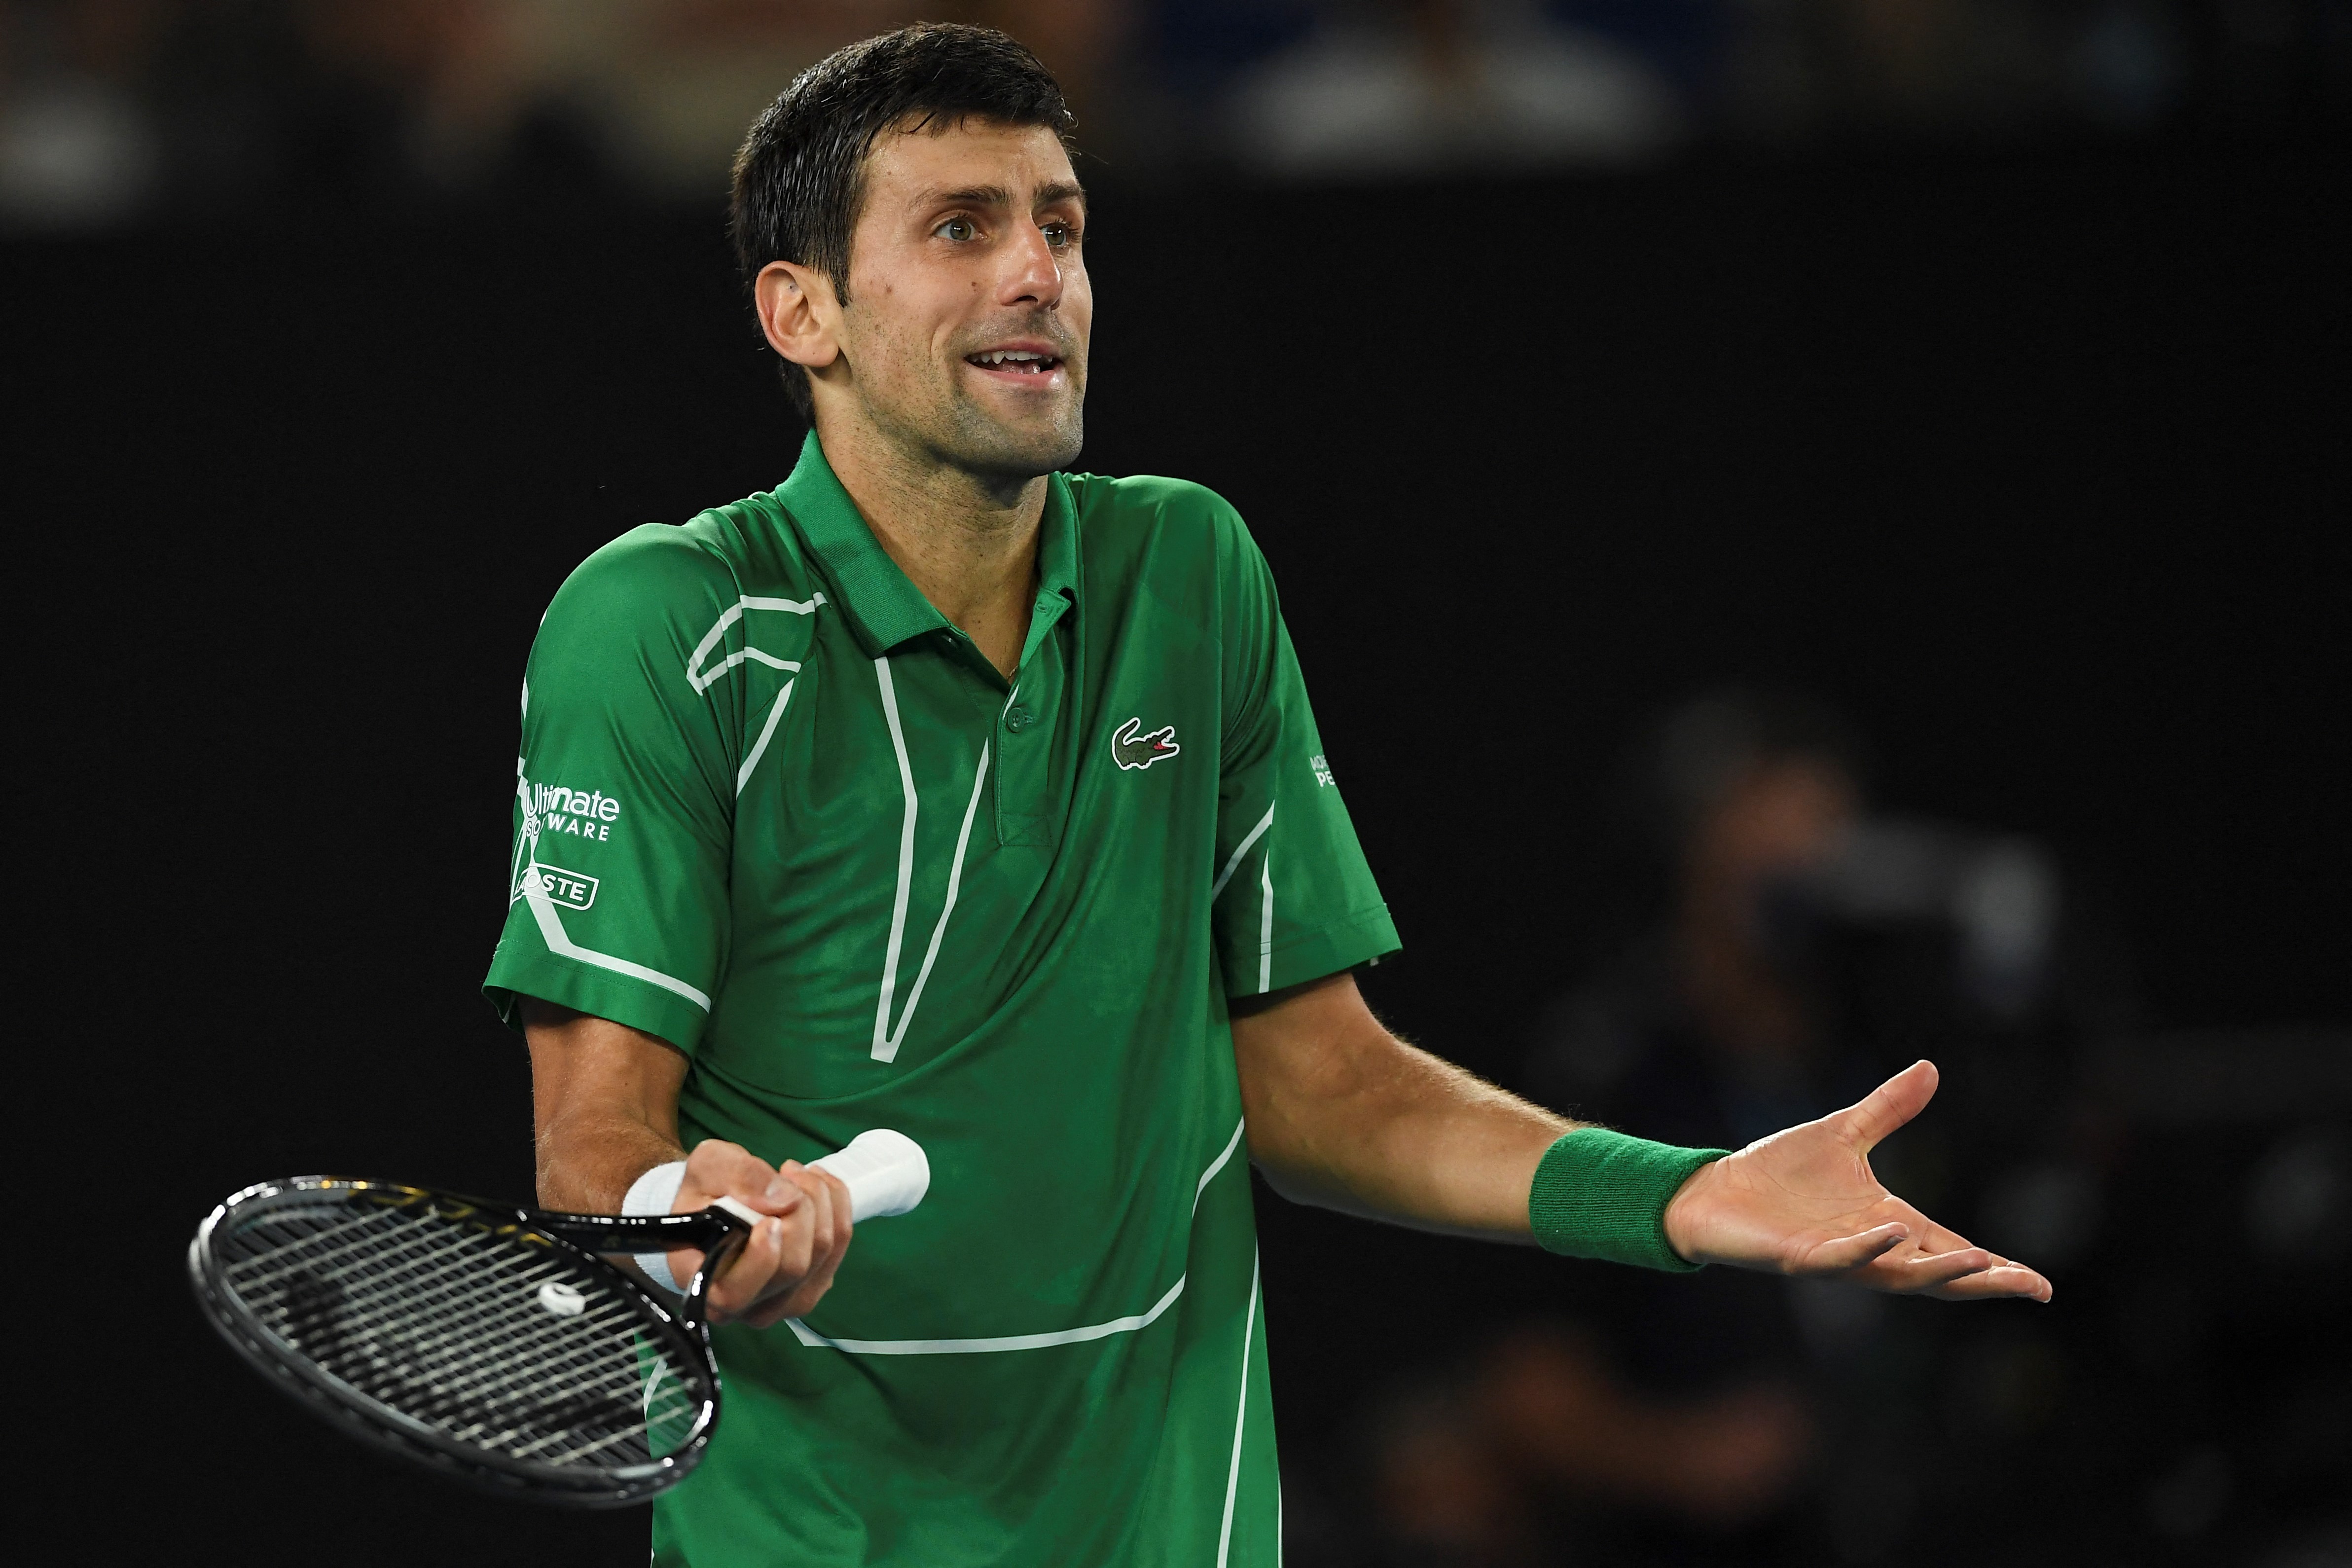 Djokovic javára ítélt a bíróság, de ettől még nem biztos, hogy elindulhat az Ausztrál Openen